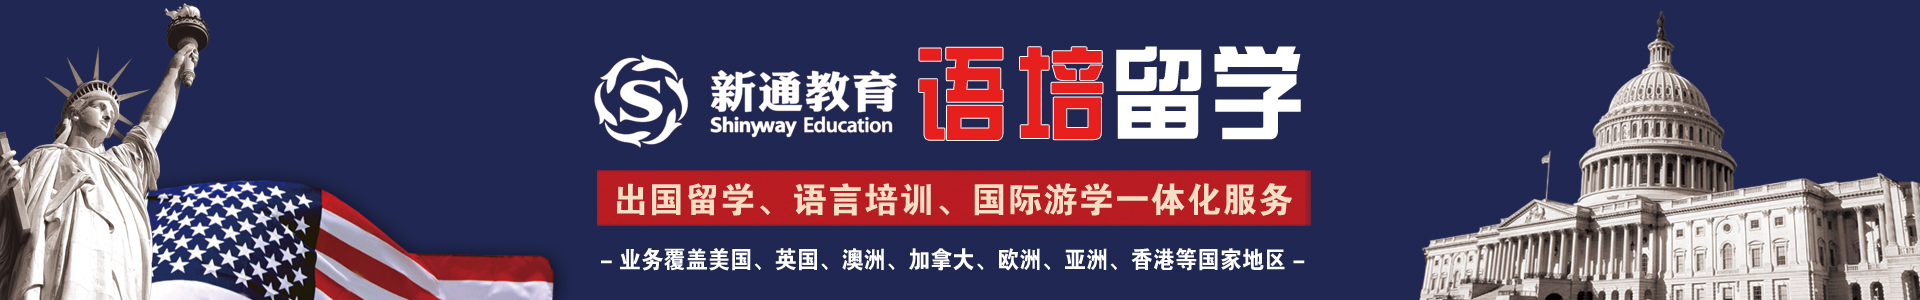 广州新通语培留学服务机构